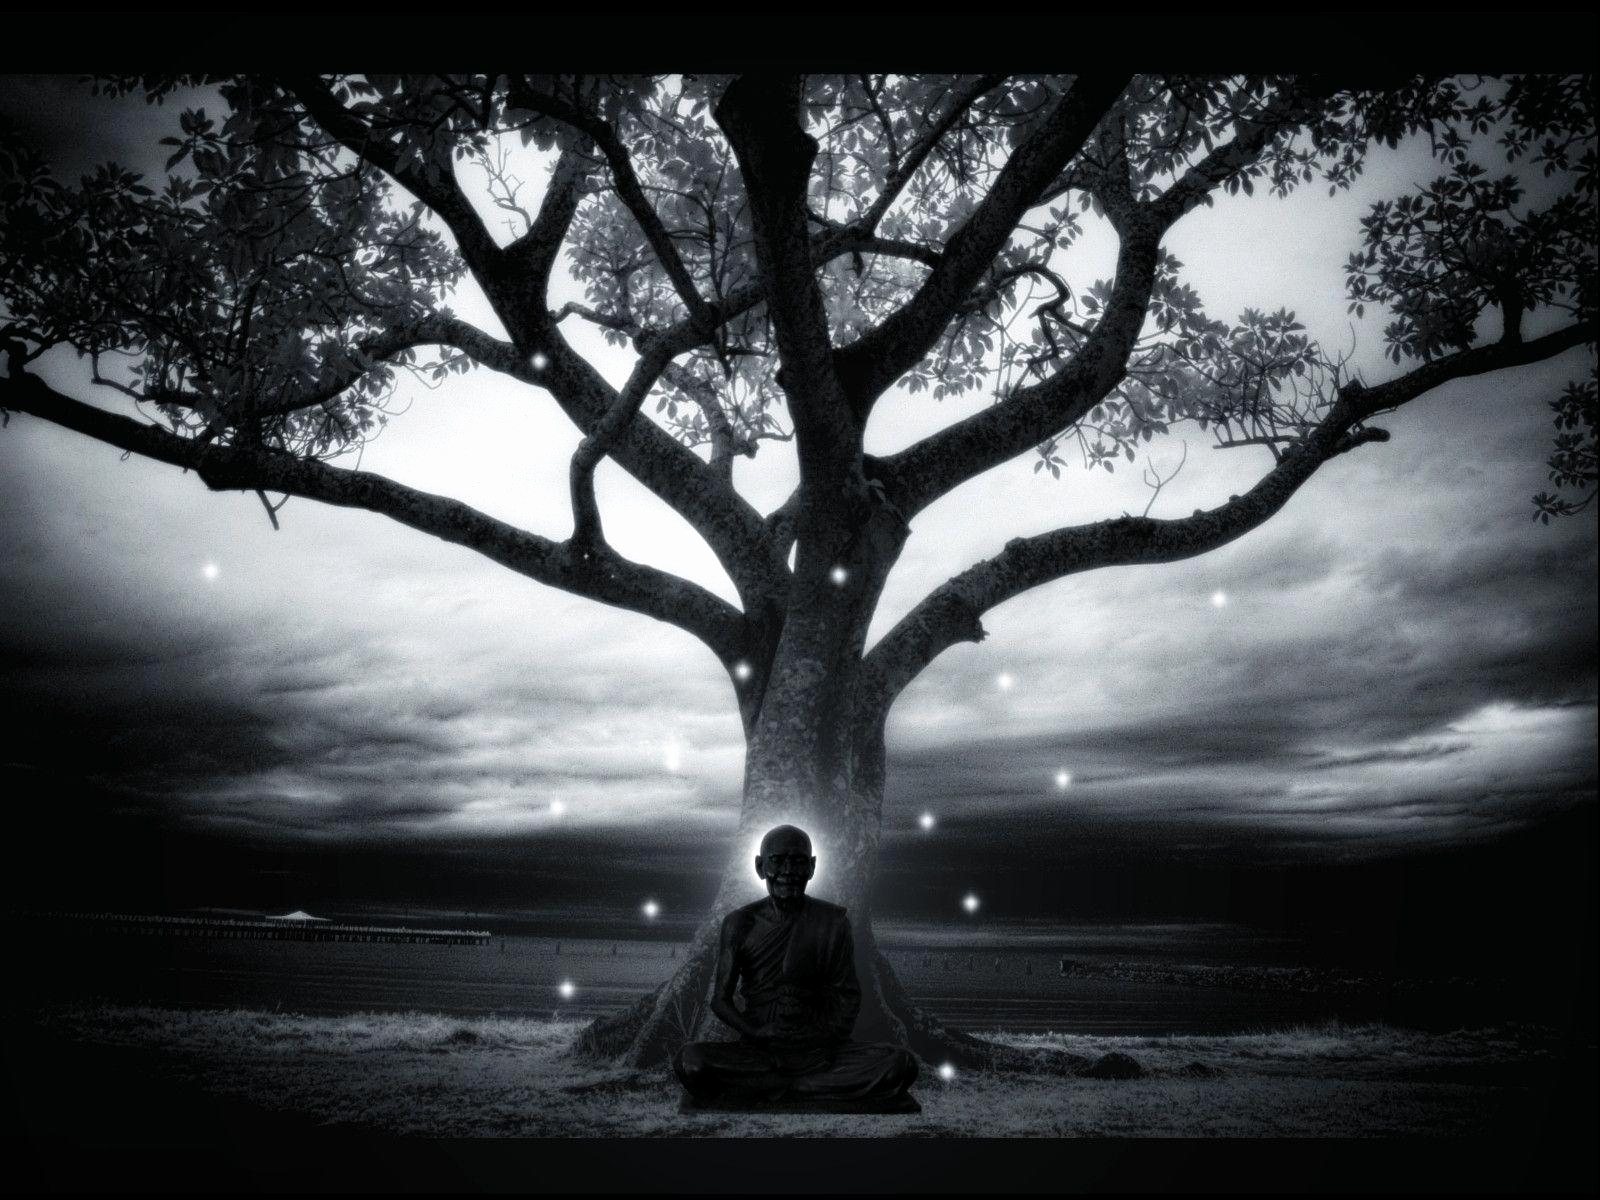 Imagenes De Meditacion Zen , HD Wallpaper & Backgrounds